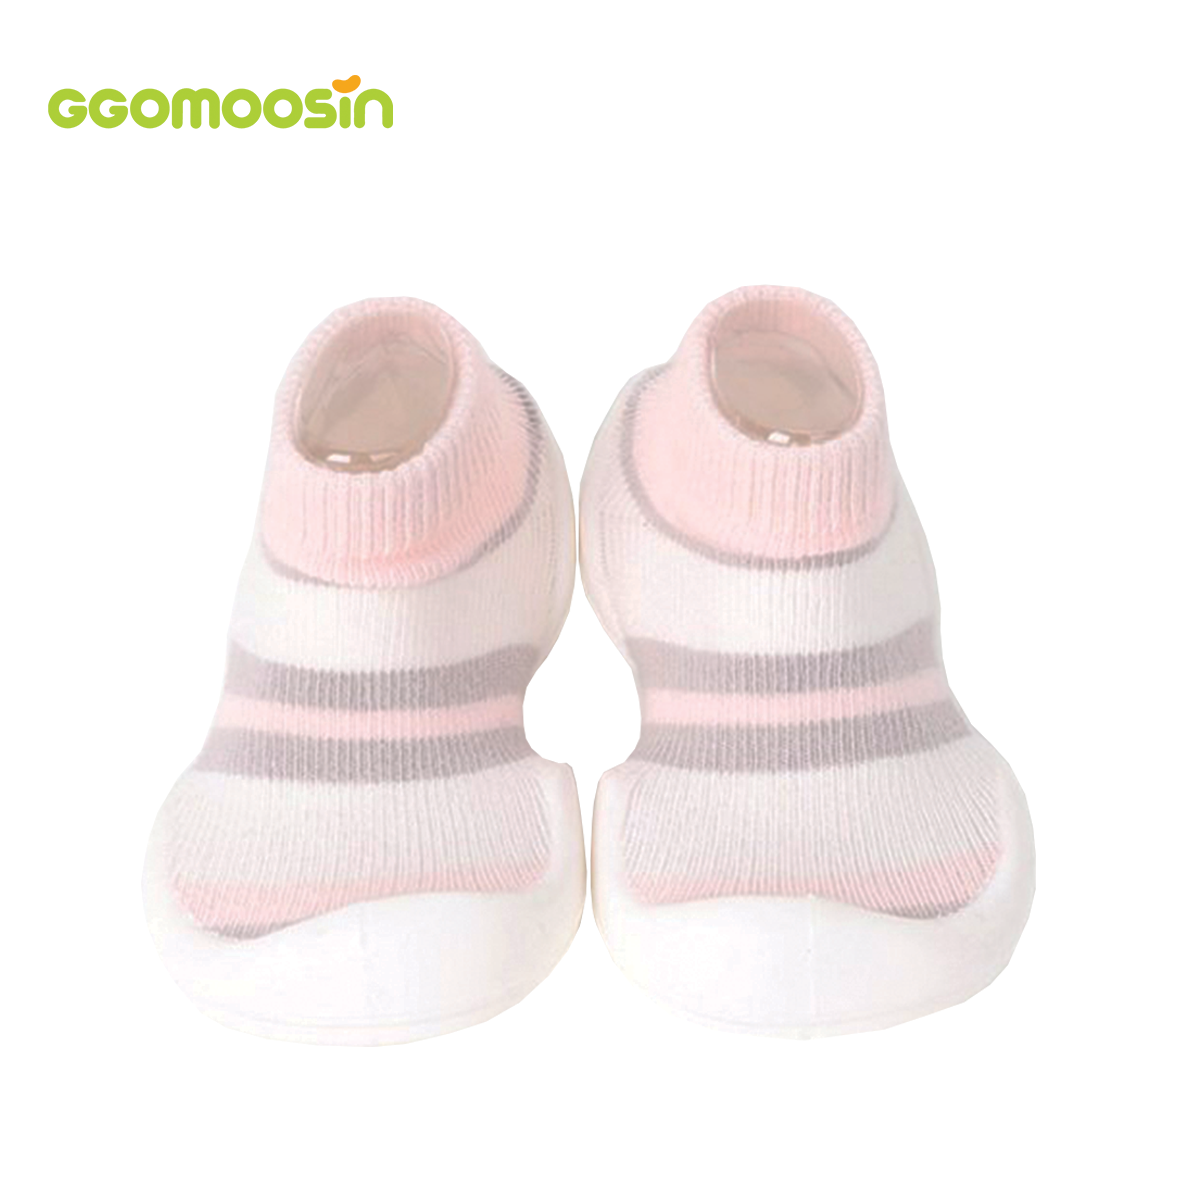 ราคา รองเท้าเด็กเล็ก รองเท้าเด็กหัดเดิน Ggomoosin - Pink Ring White นุ่มสบาย ระบายอากาศ Baby Shoes